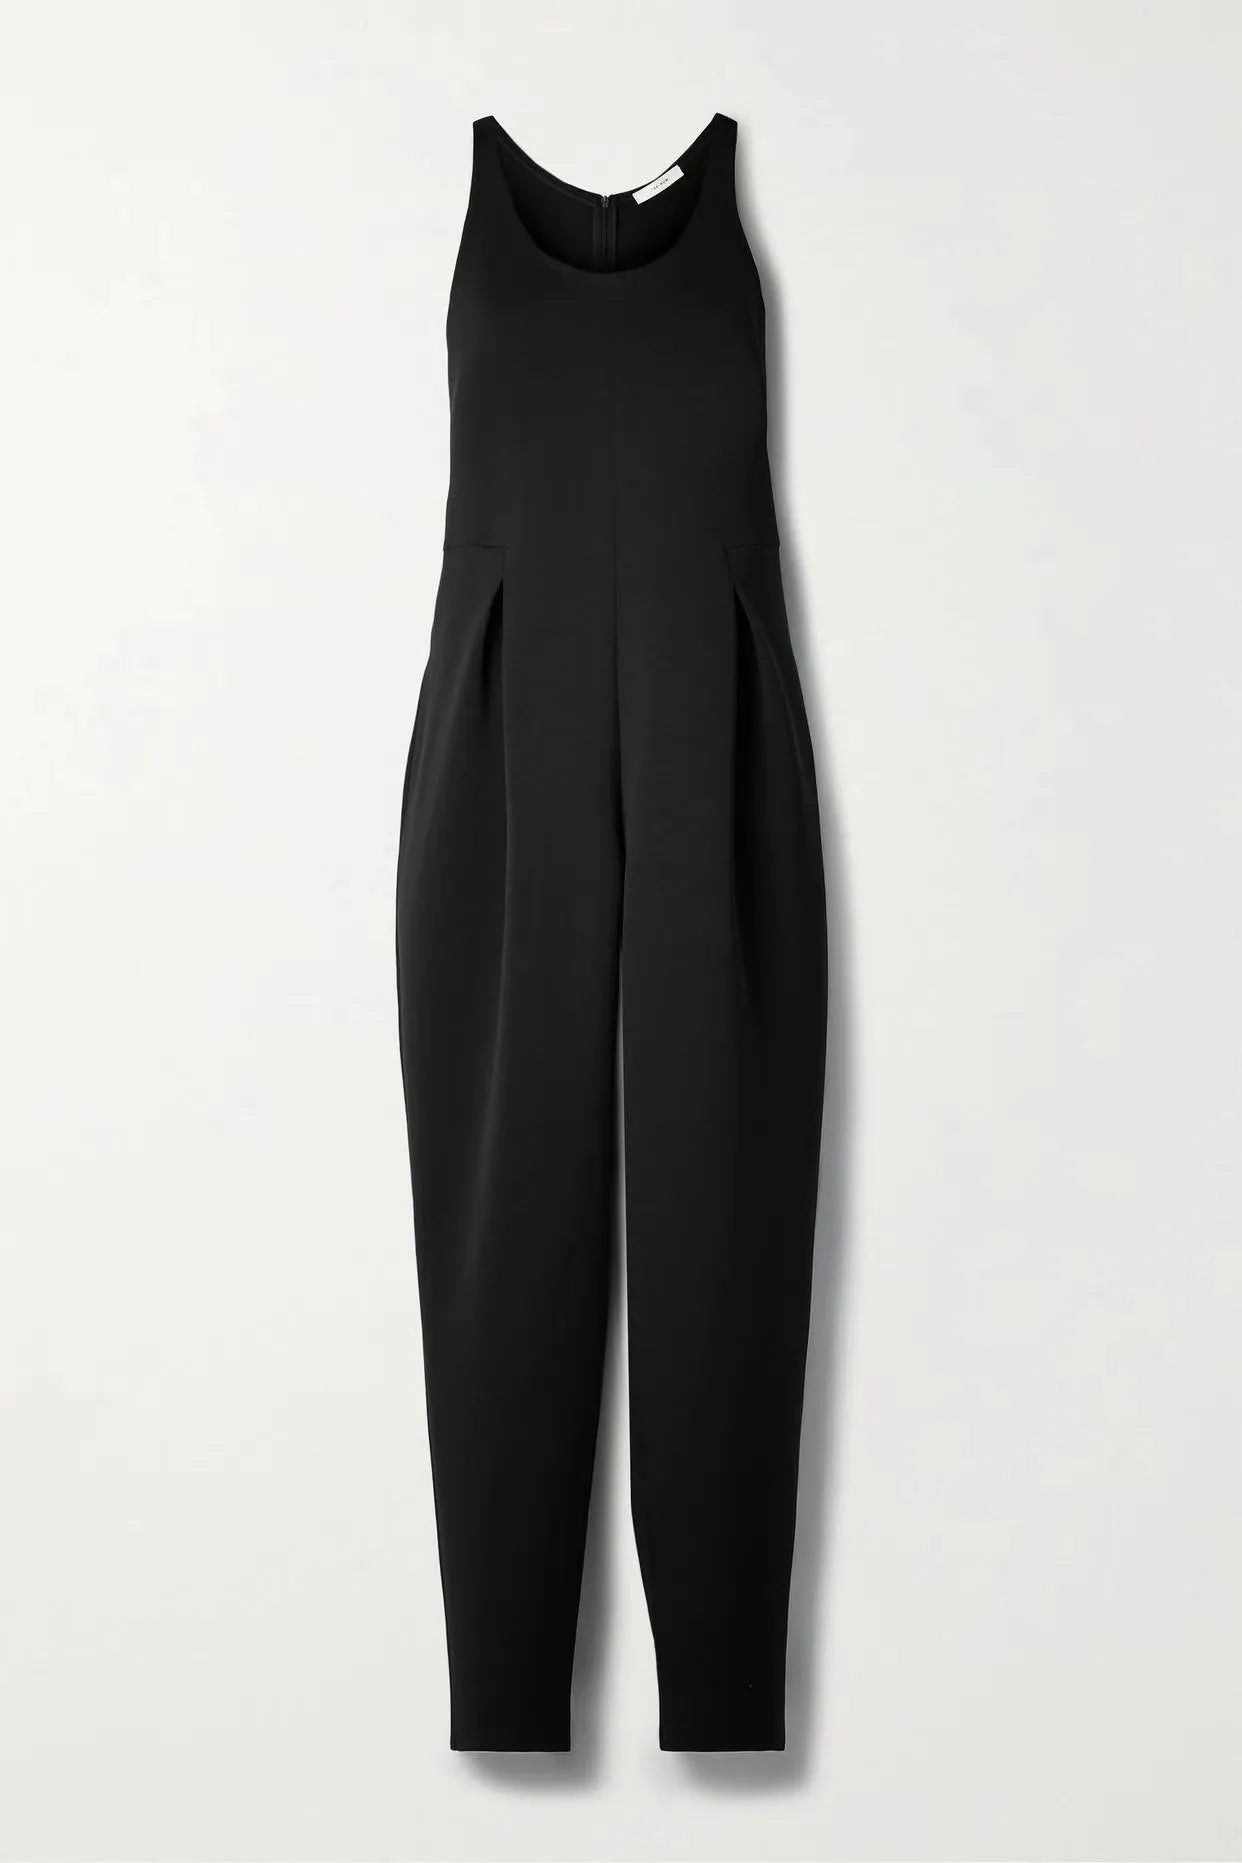 ”10K” Women’s Classic Wide Leg Black Jumpsuit